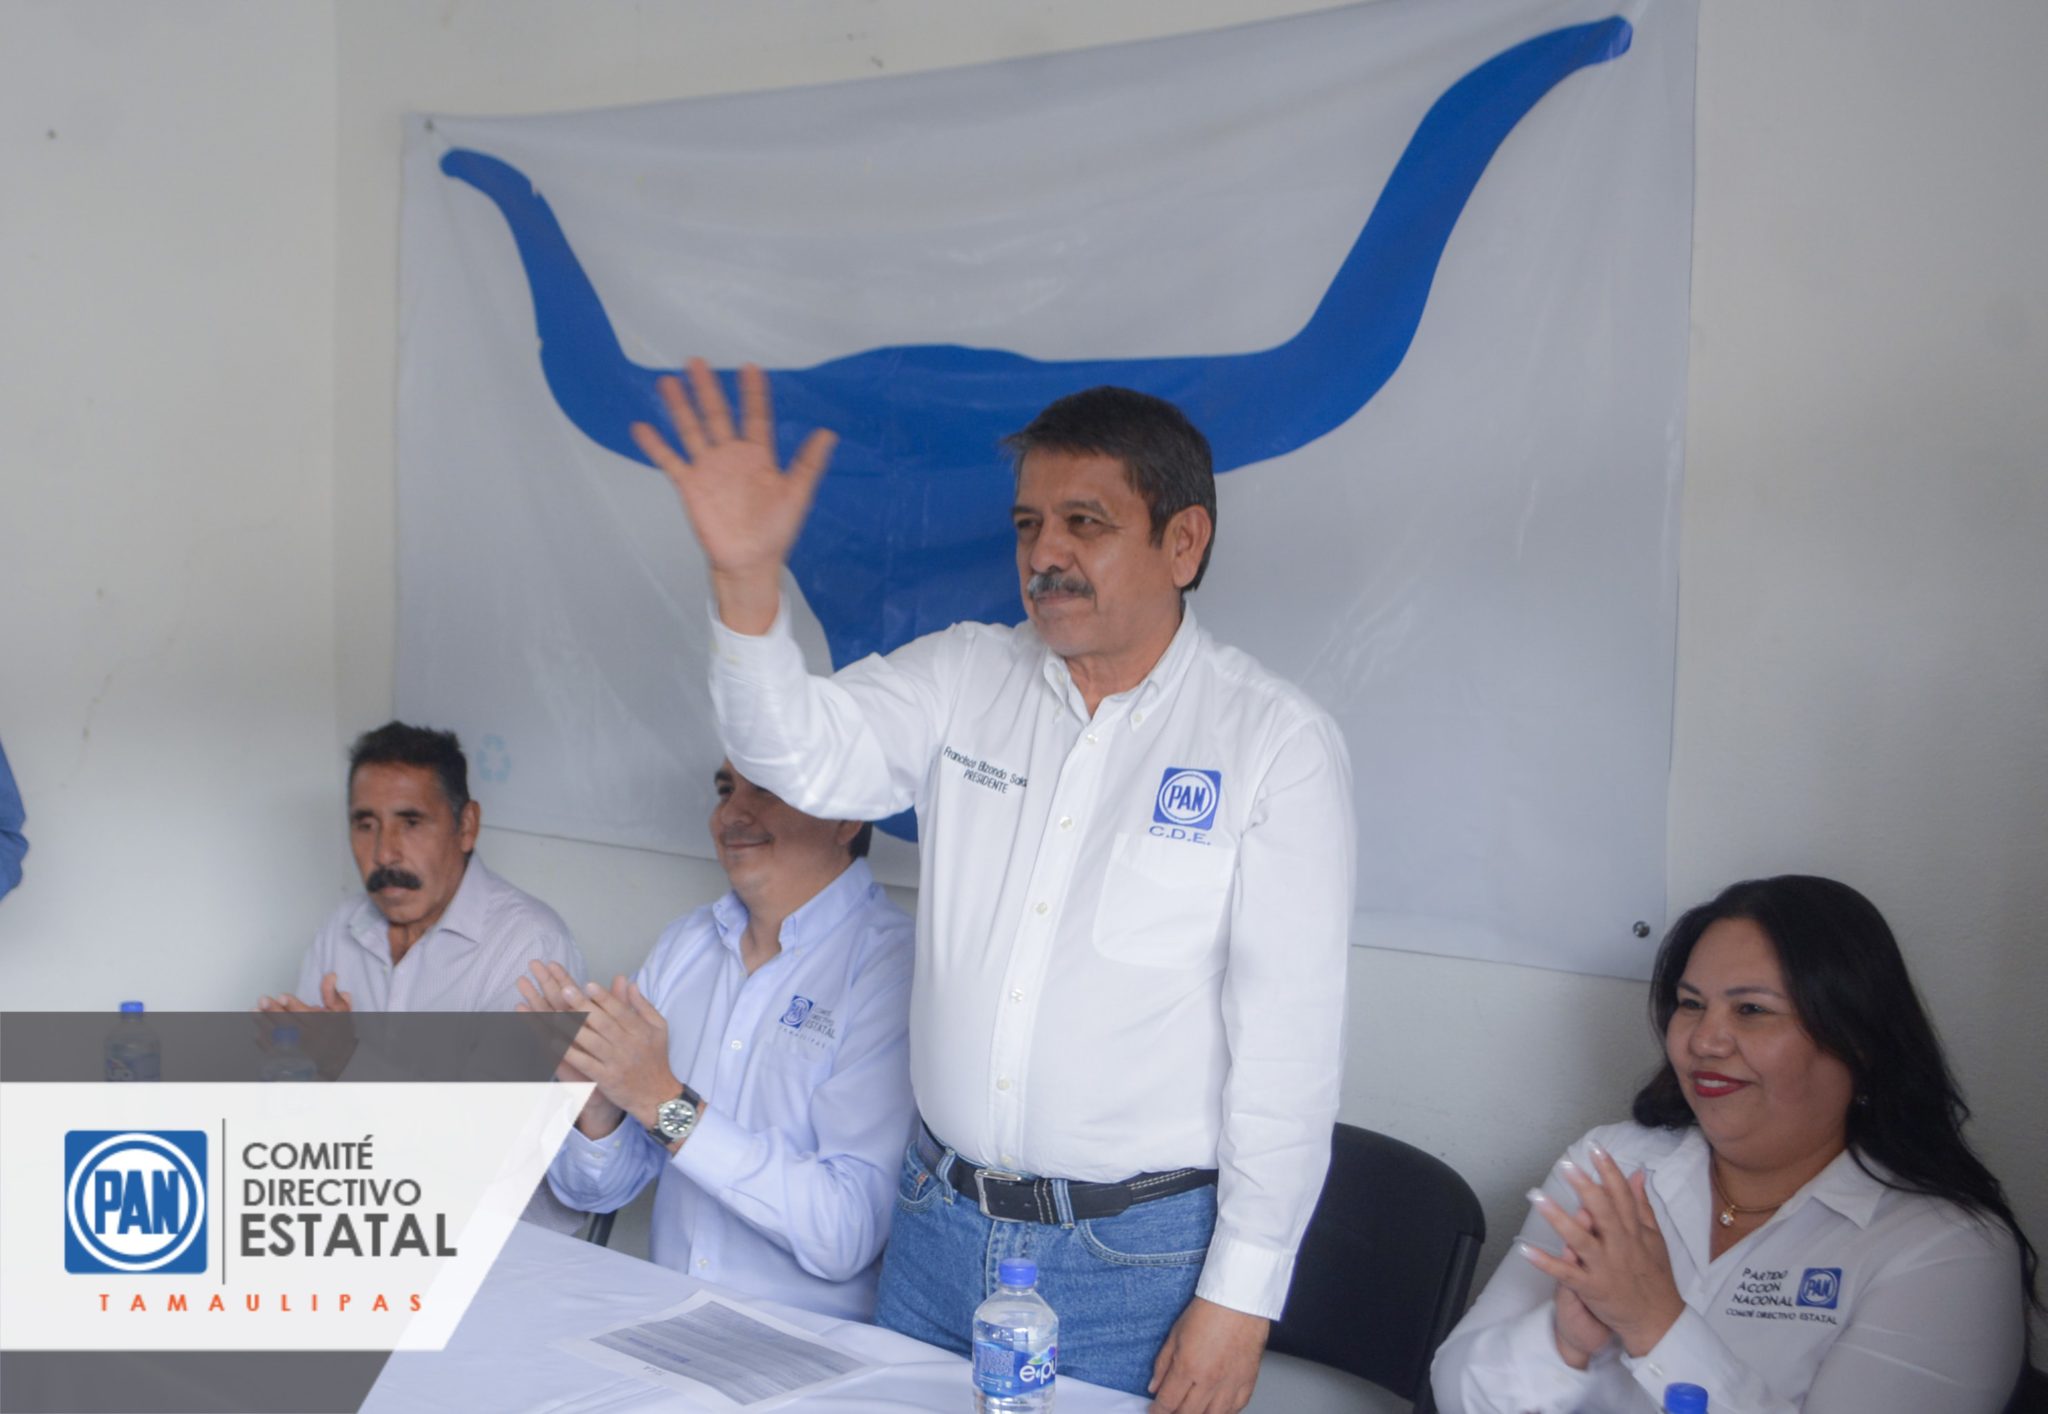 El PAN Tamaulipas no se distrae, trabaja en su fortalecimiento